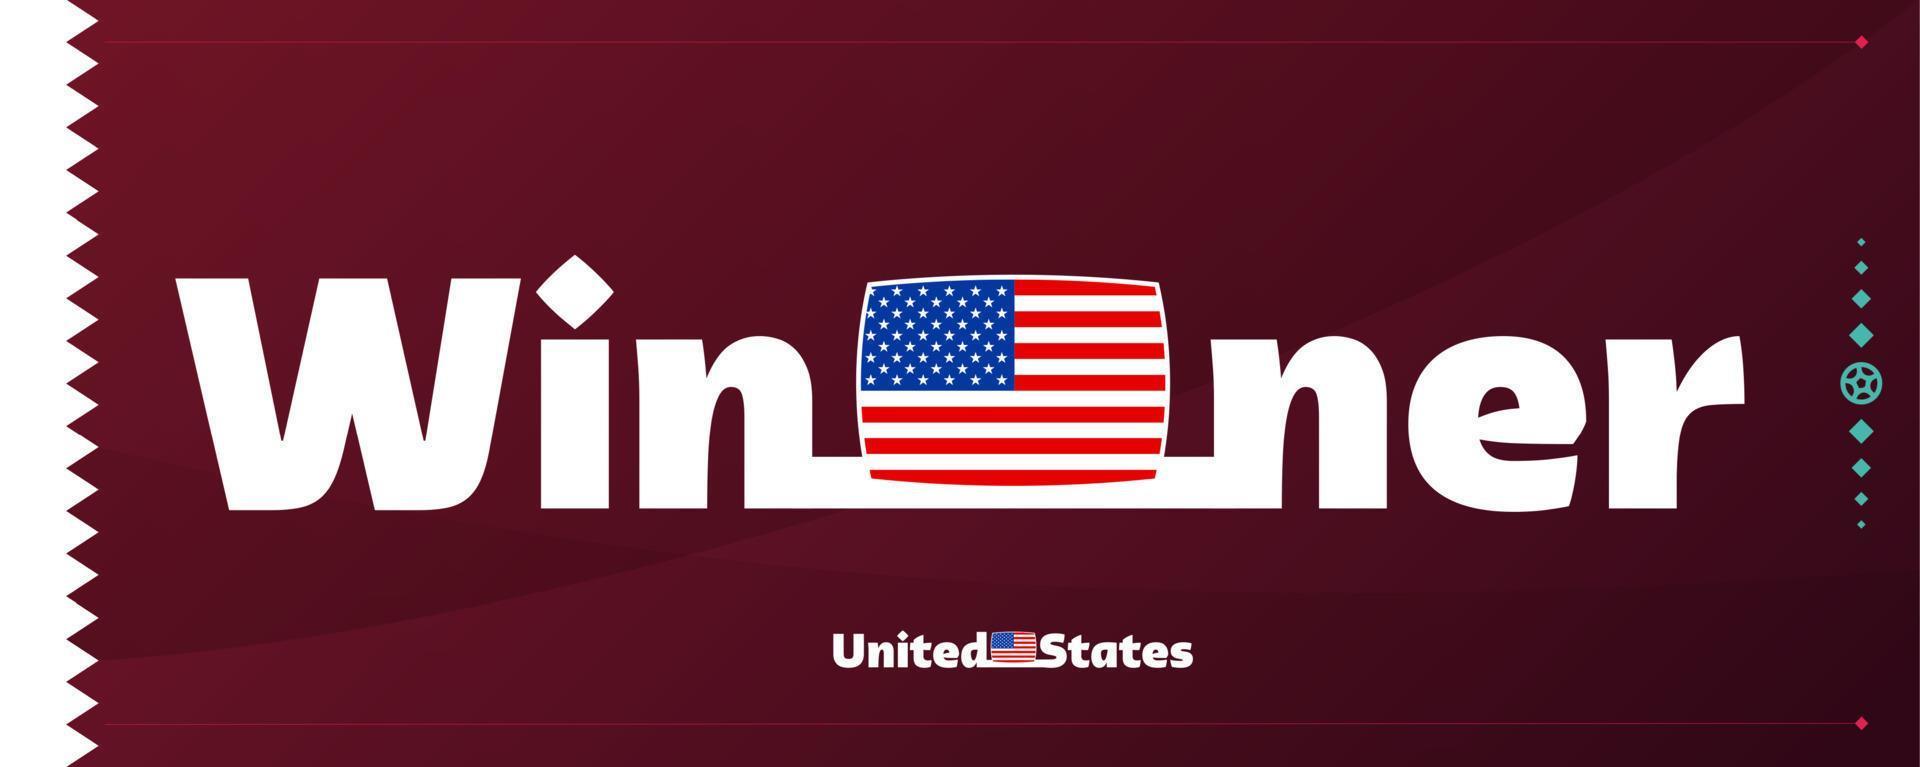 Stati Uniti d'America, unito stati bandiera con vincitore slogan su calcio sfondo. mondo calcio 2022 torneo vettore illustrazione